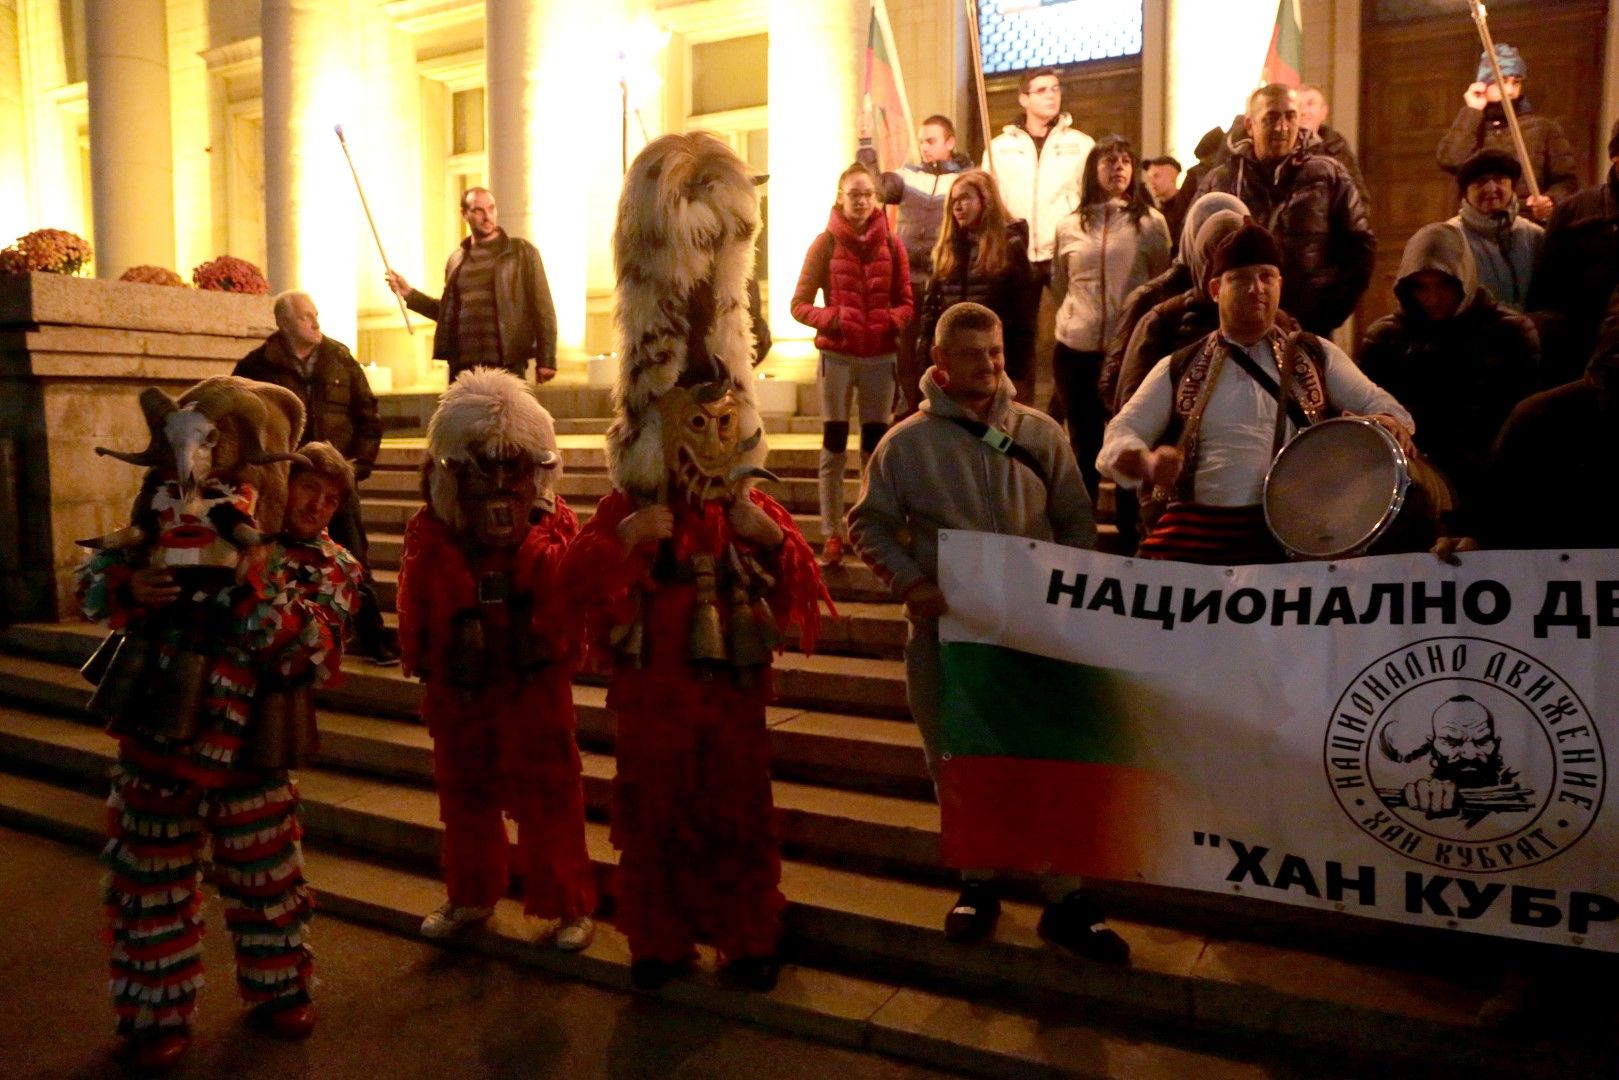 Национално движение „Хан Кубрат“ организира „Българският отговор на Хелоуин" пред Националната библиотека "Св. Св. Кирил и Методий" - с кукери